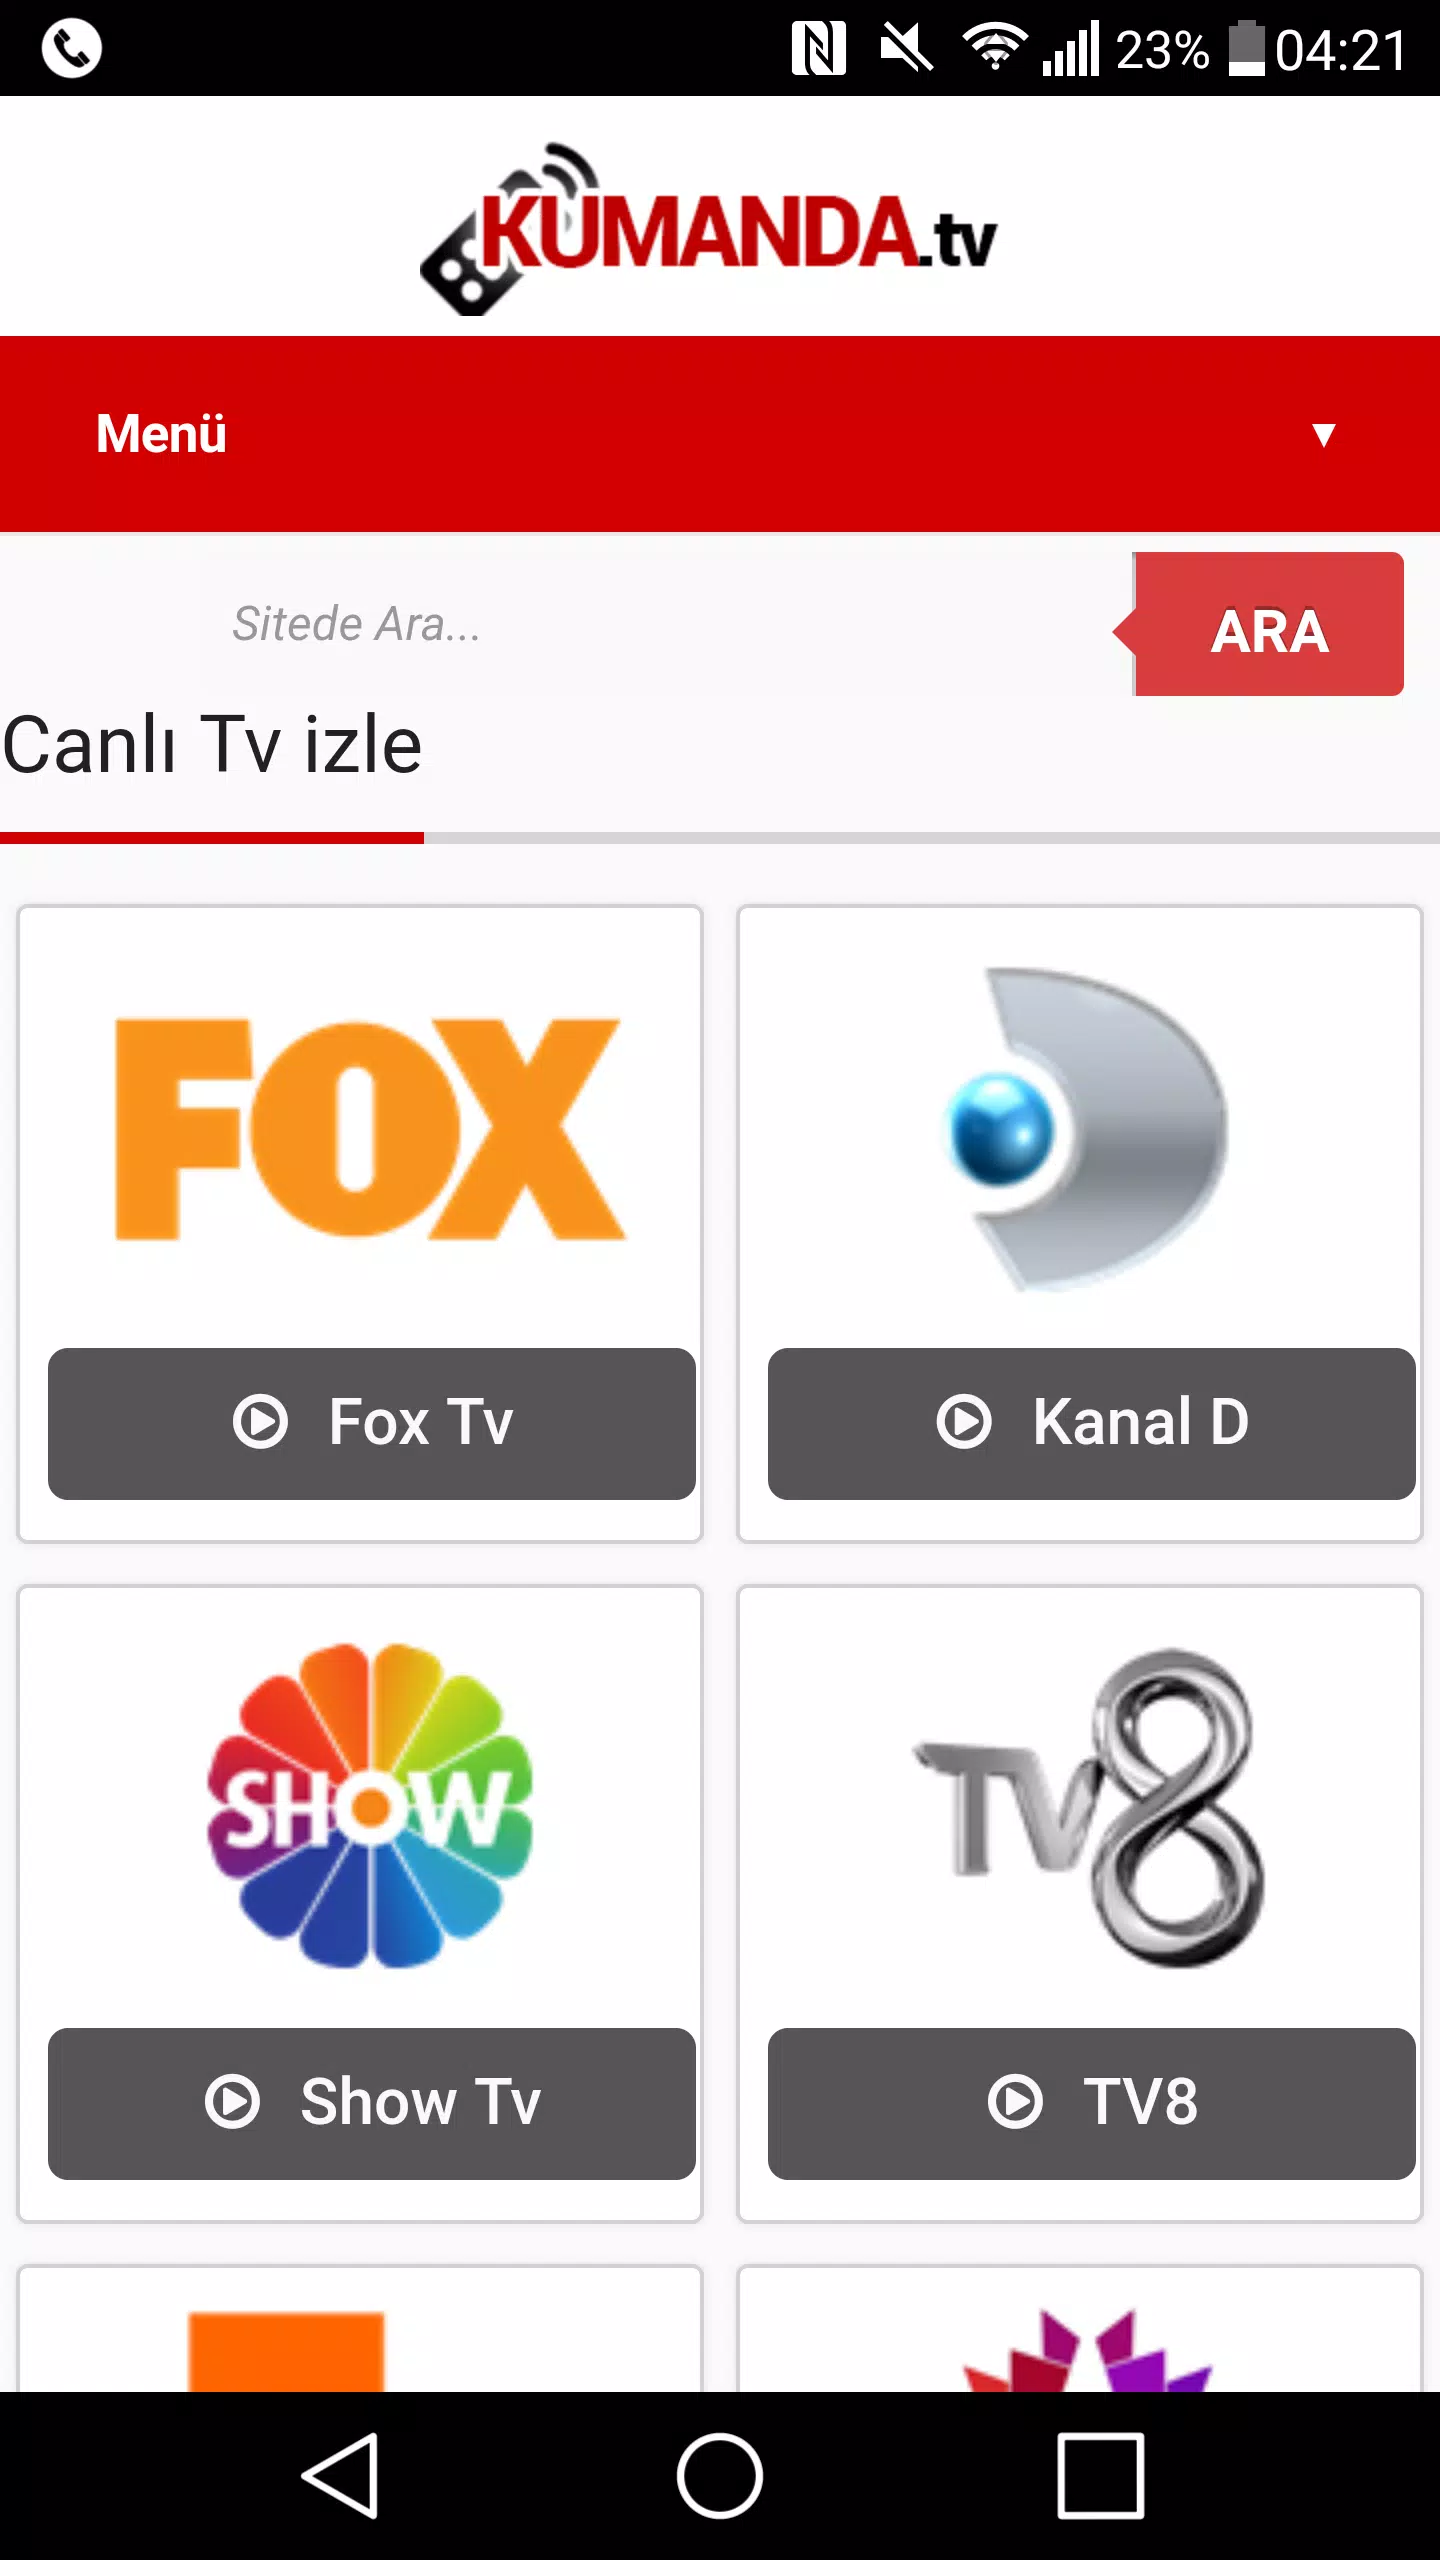 Canlı TV izle - Kumanda.TV APK pour Android Télécharger